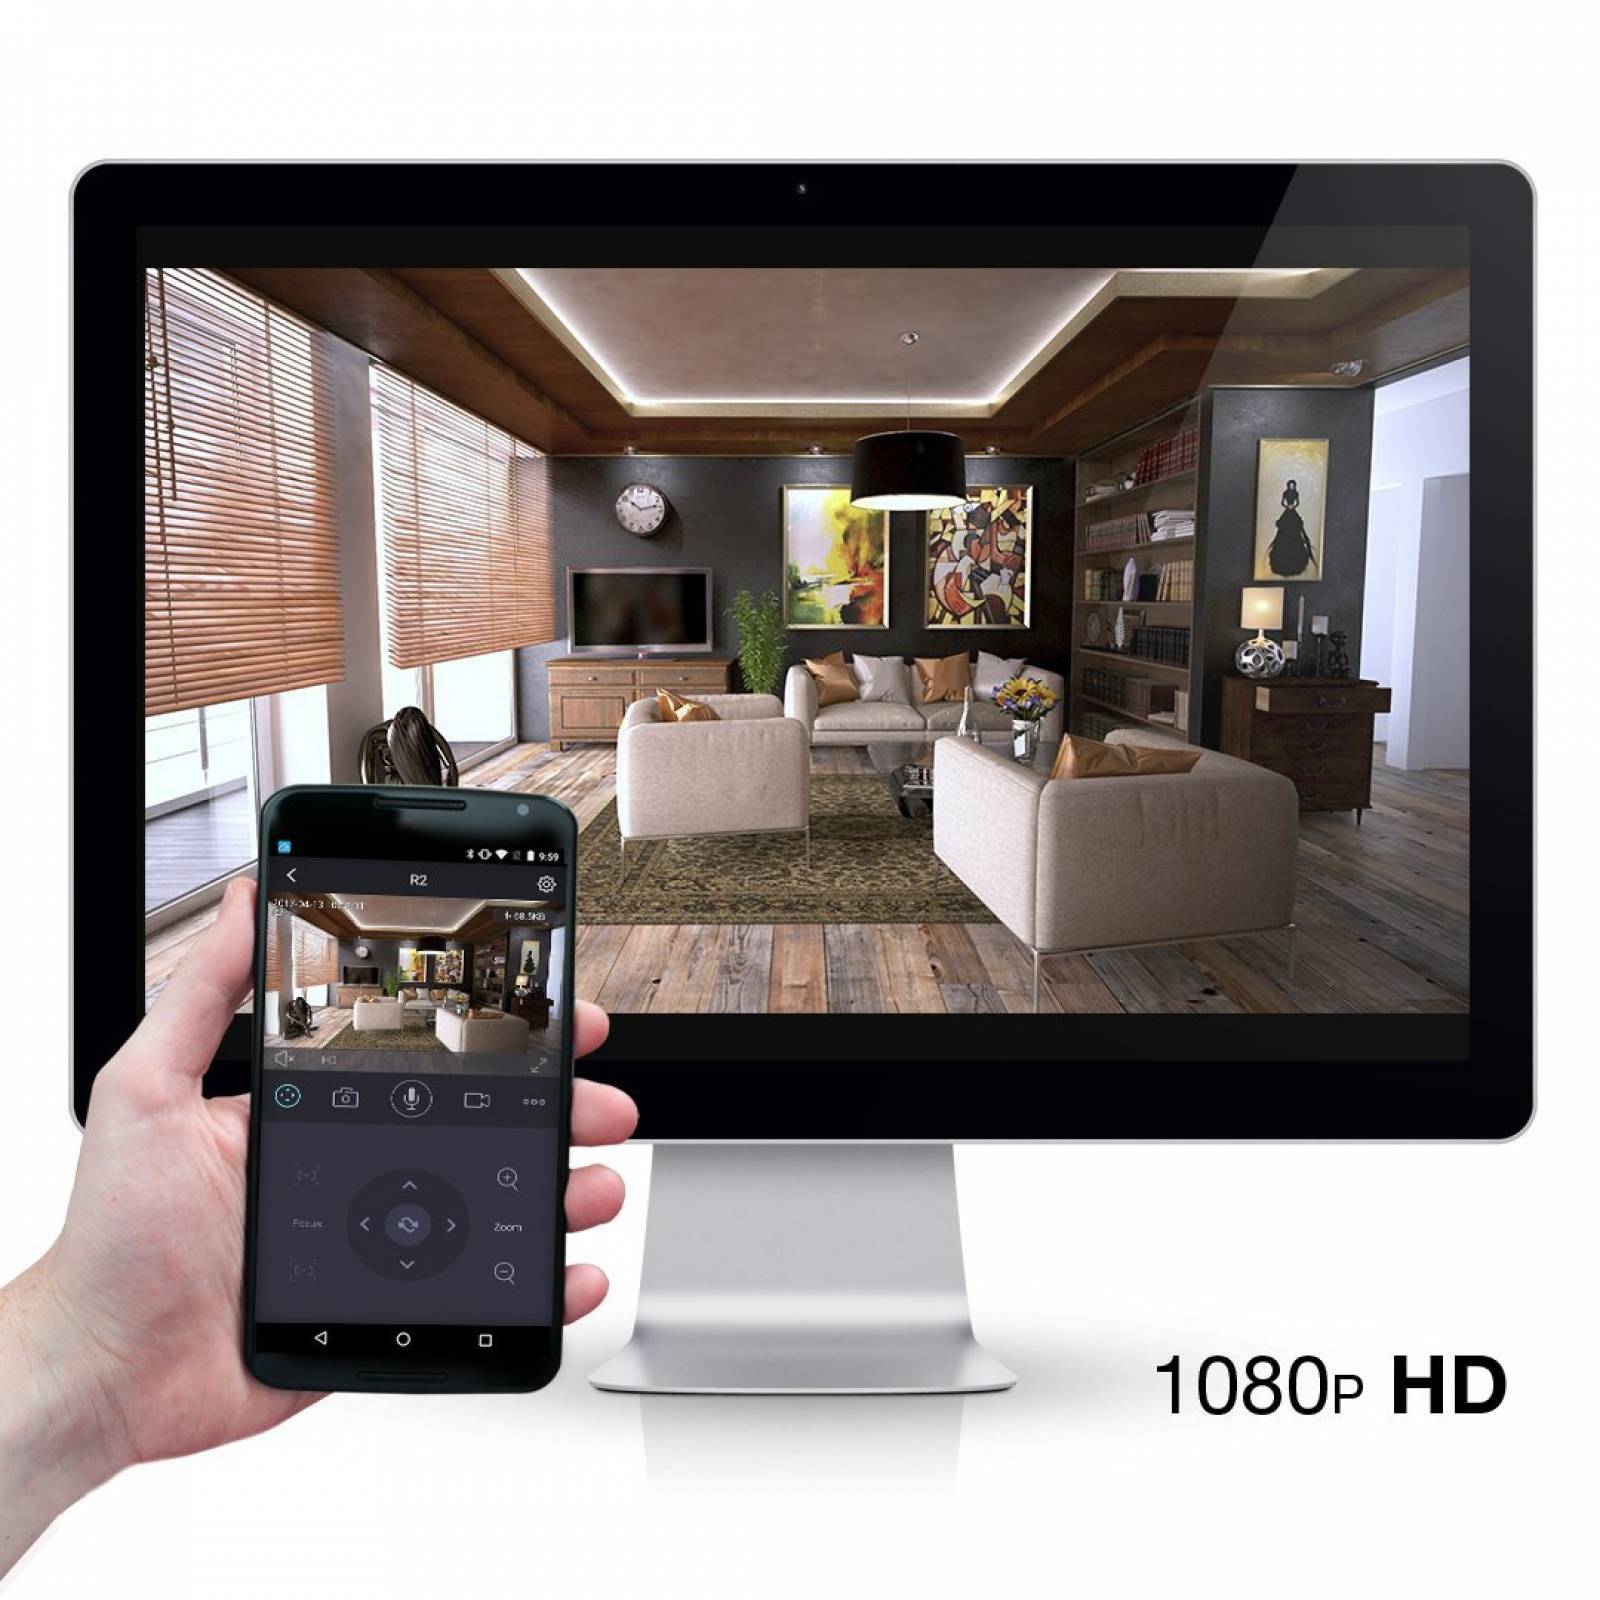 Cámara IP seguridad Foscam R2 1080p HD WiFi iOS/Andro -Negro